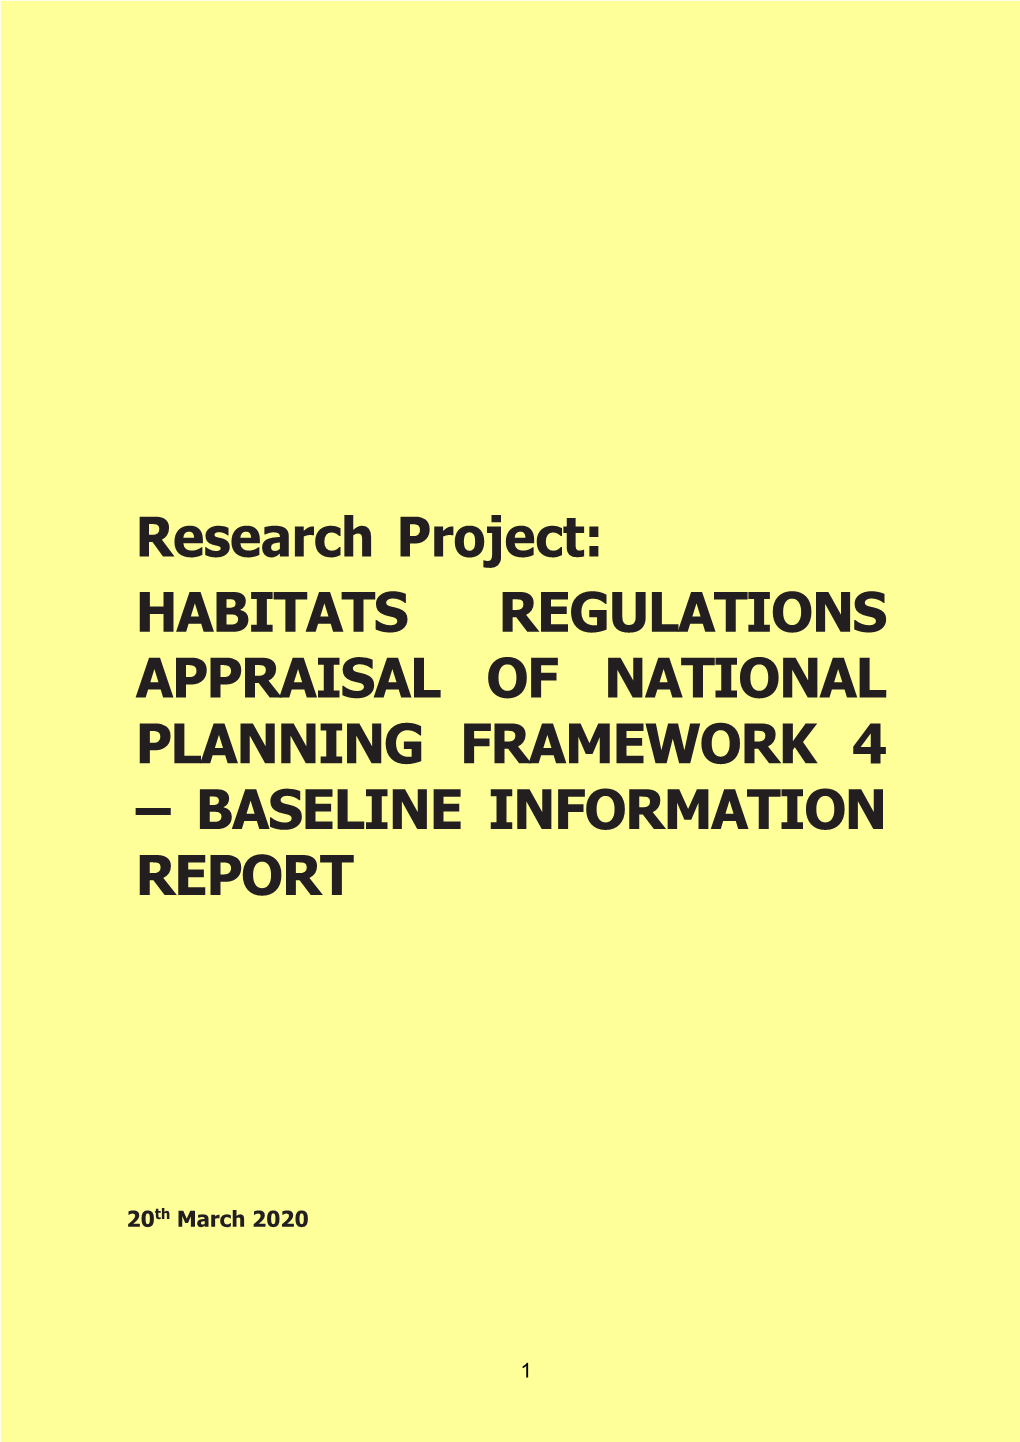 Habitats Regulations Appraisal of National Planning Framework 4 – Baseline Information Report